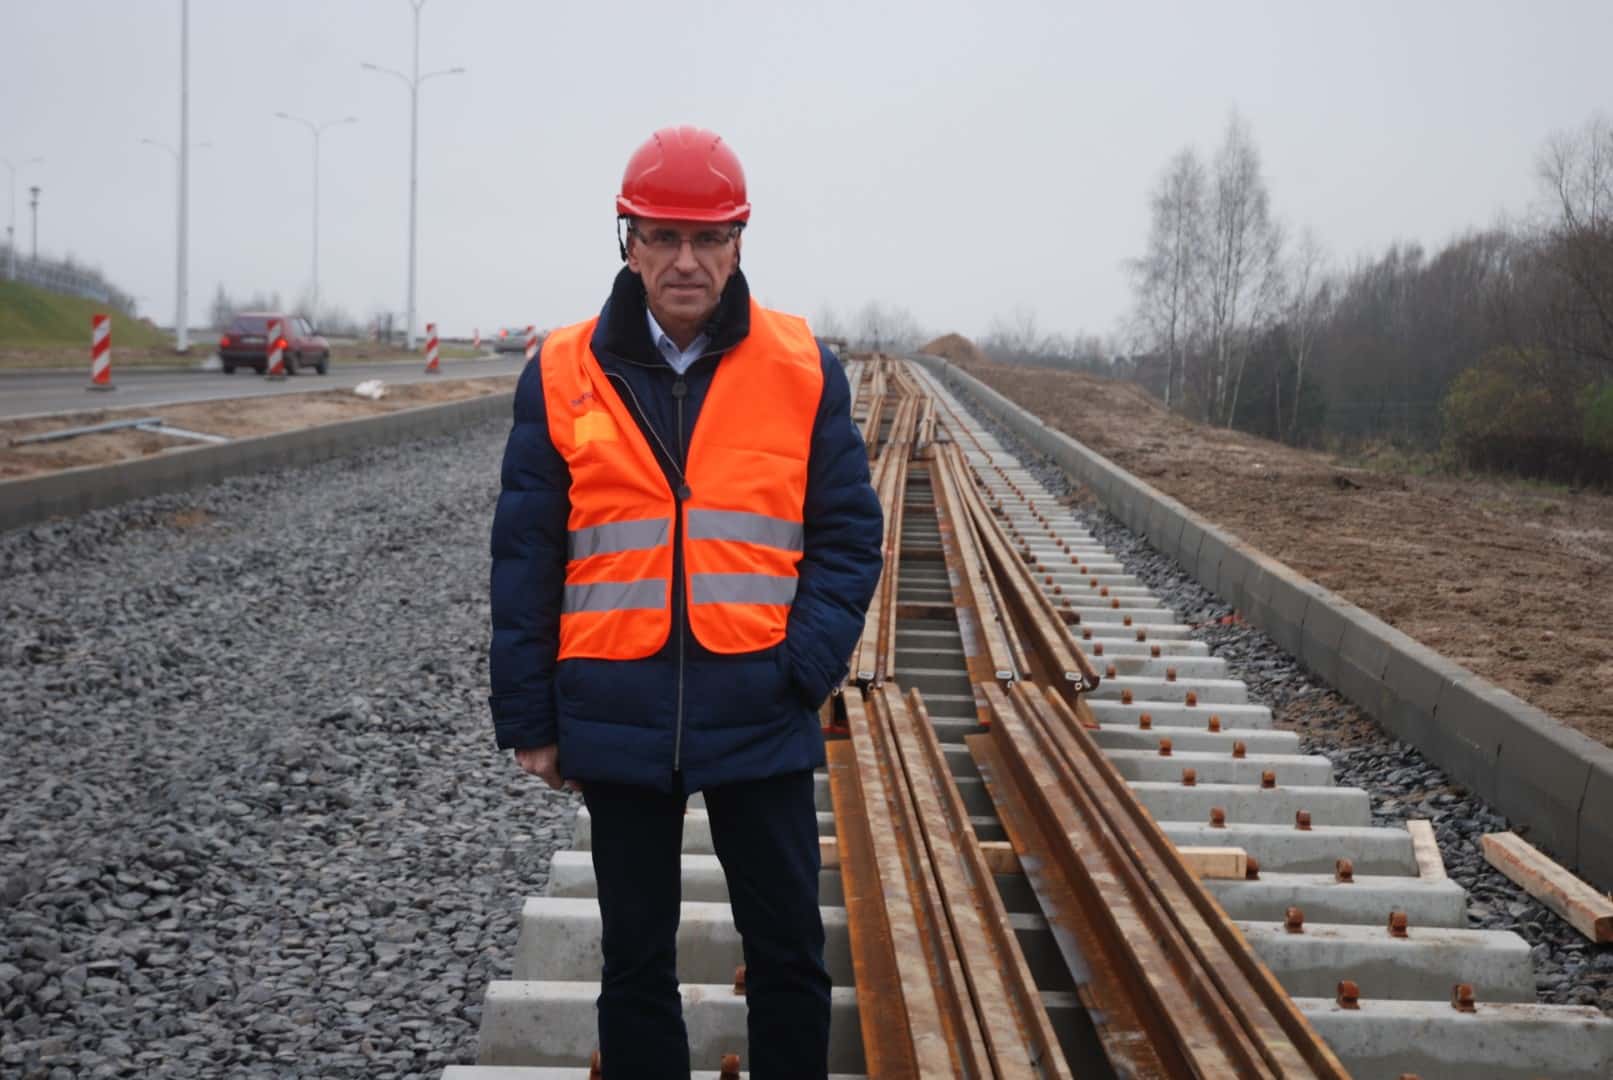 Milionowe ustalenia w sprawie projektu tramwajowego w Olsztynie pozostają tajne tramwaje Olsztyn, Wiadomości, zShowcase